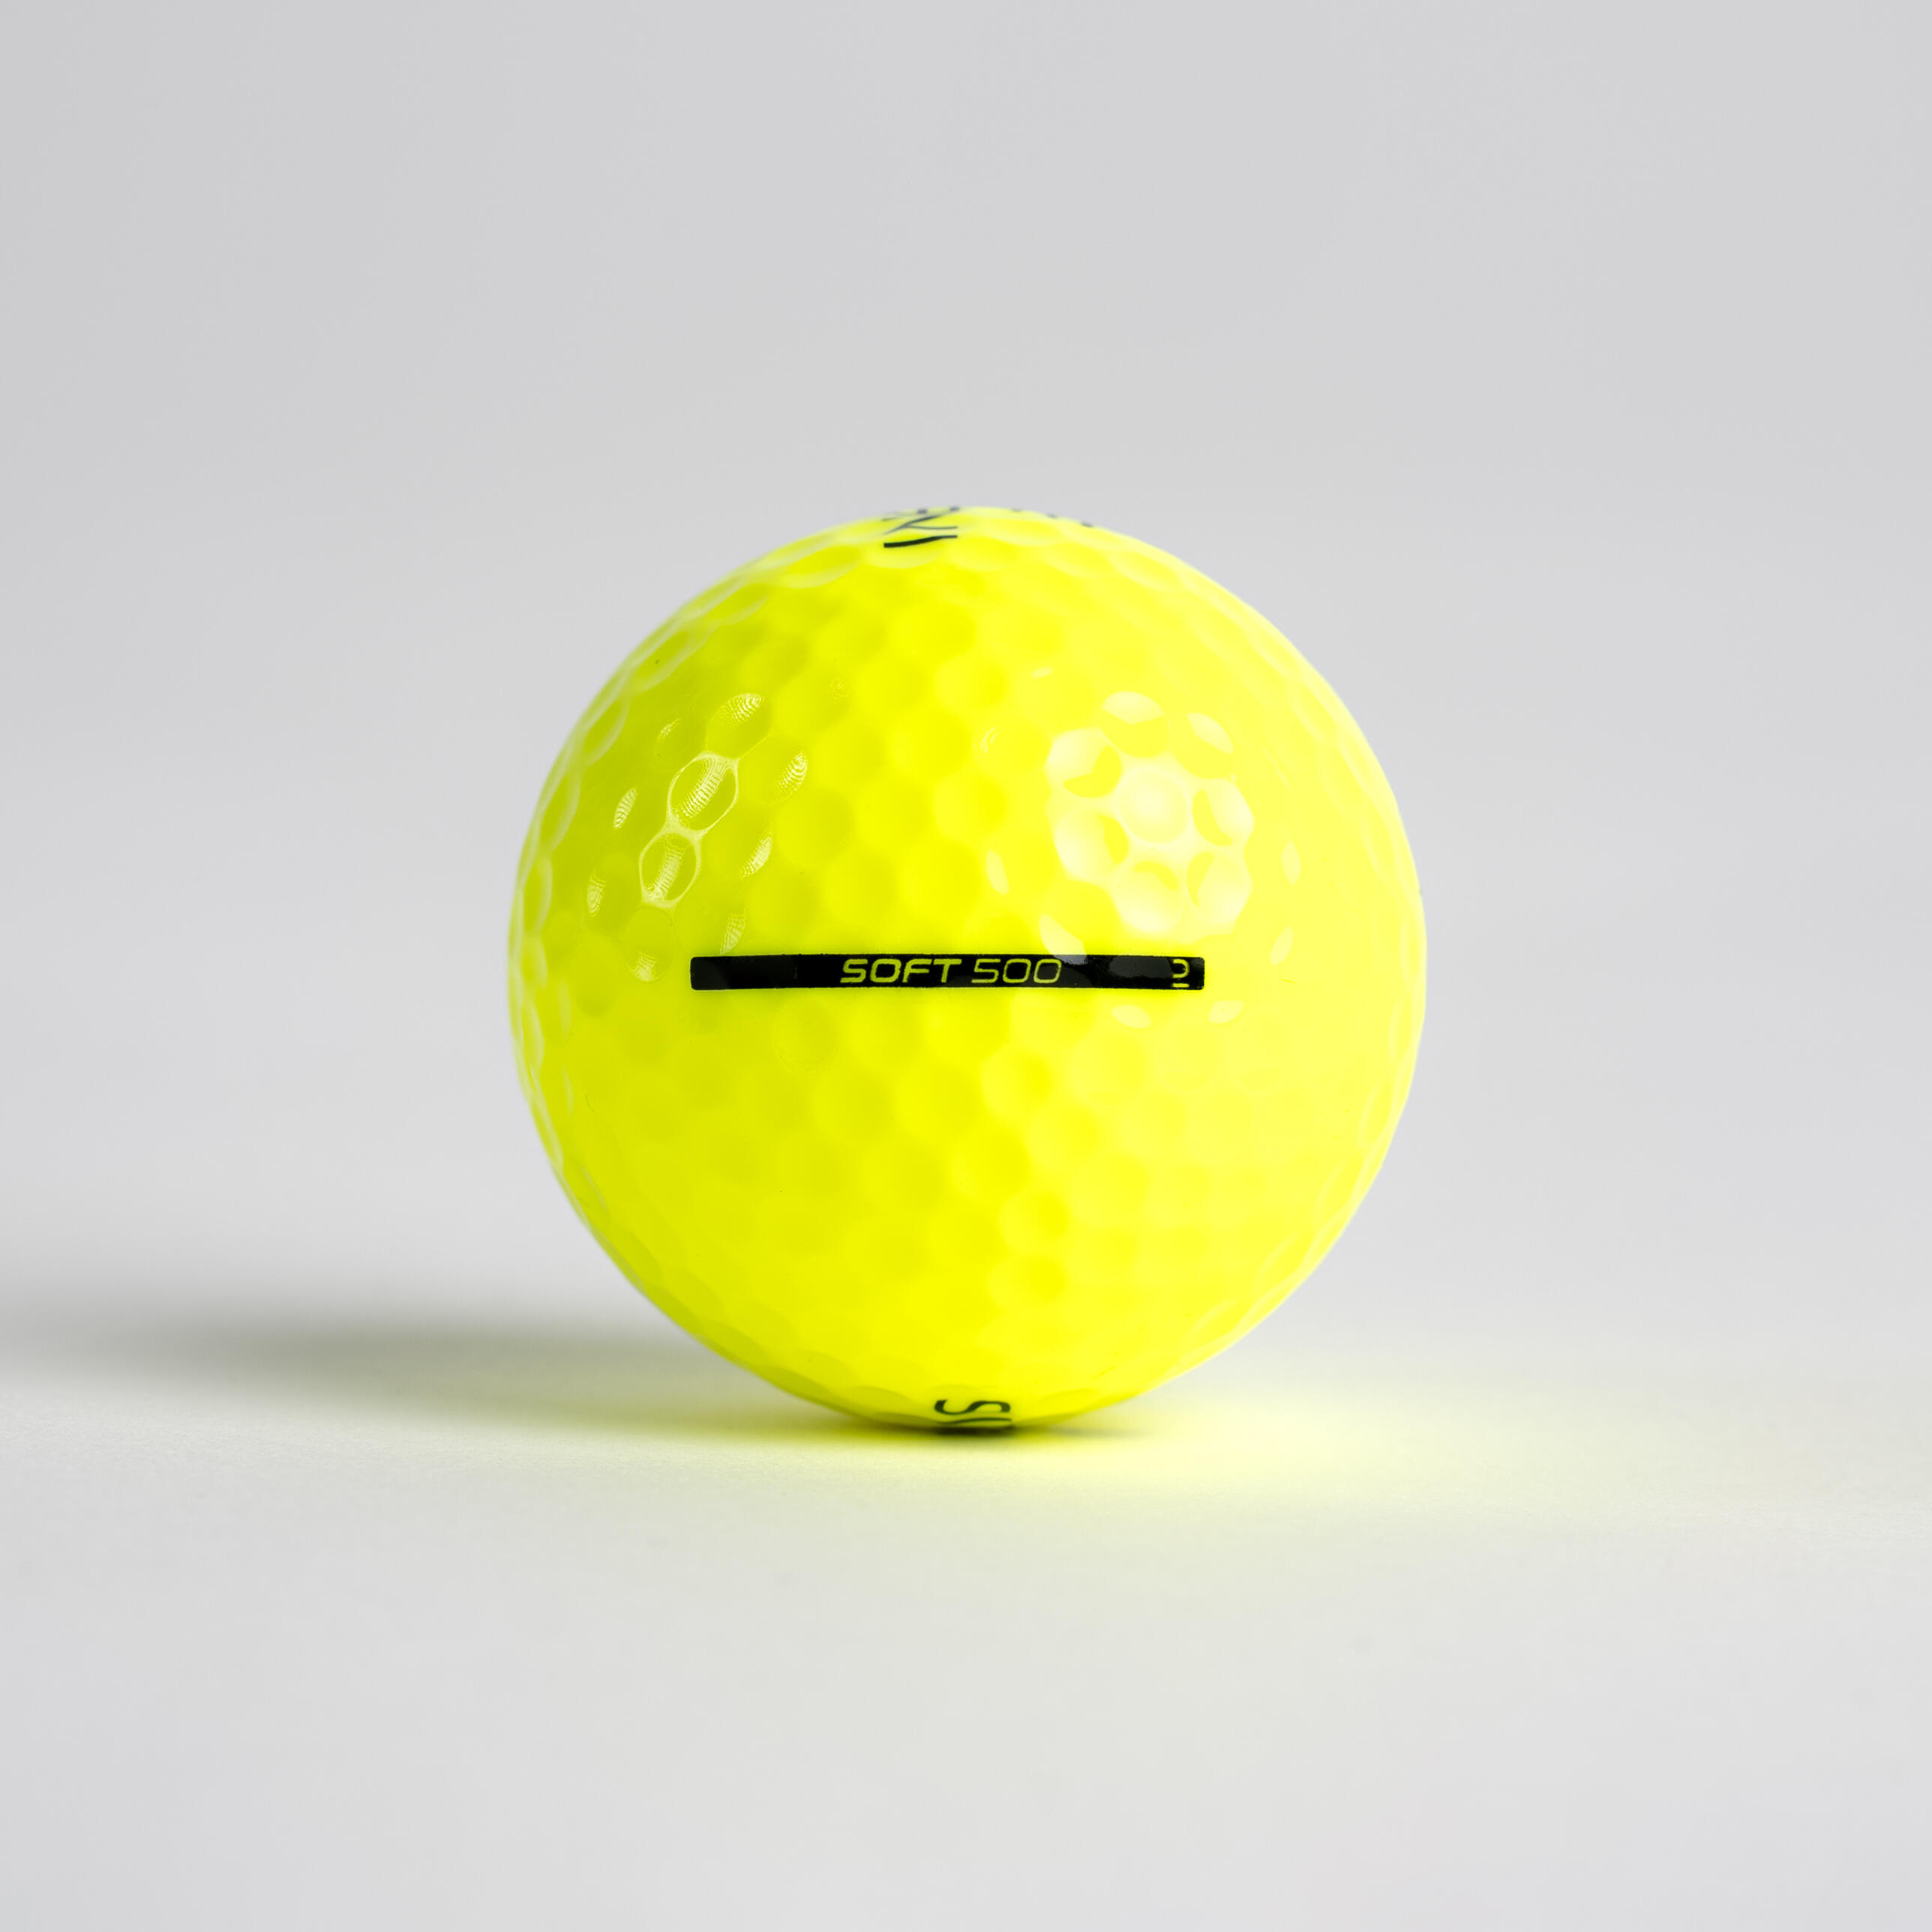 Golf Balls x12 - Inesis Soft 500 Yellow - INESIS